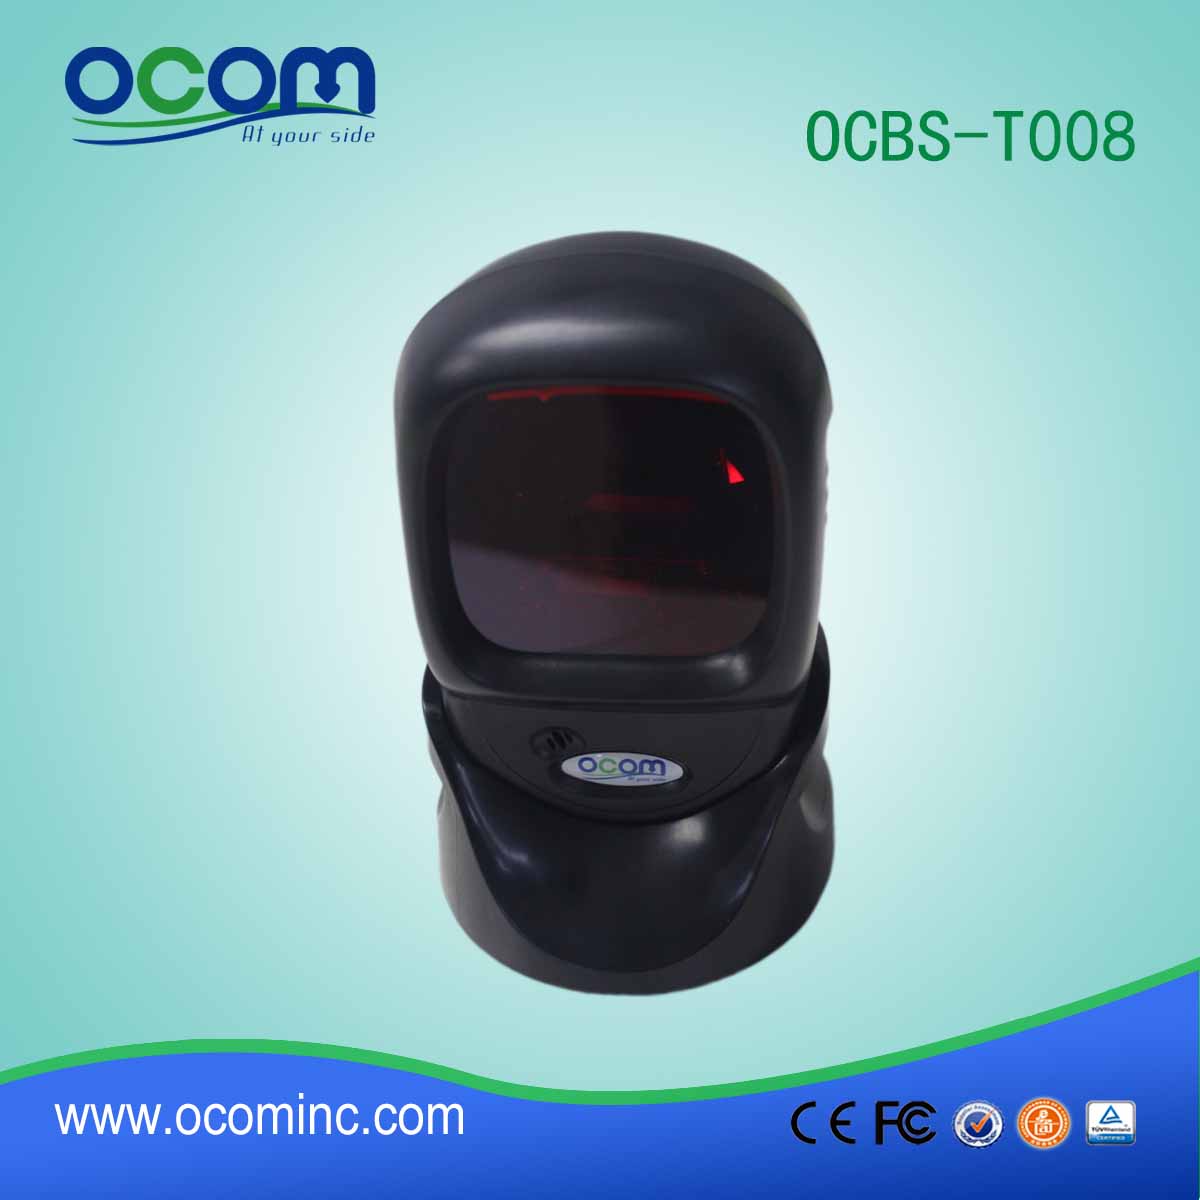 Scanner Label OCBs-T008 Laser Desktop Sollievo per cassiere del supermercato